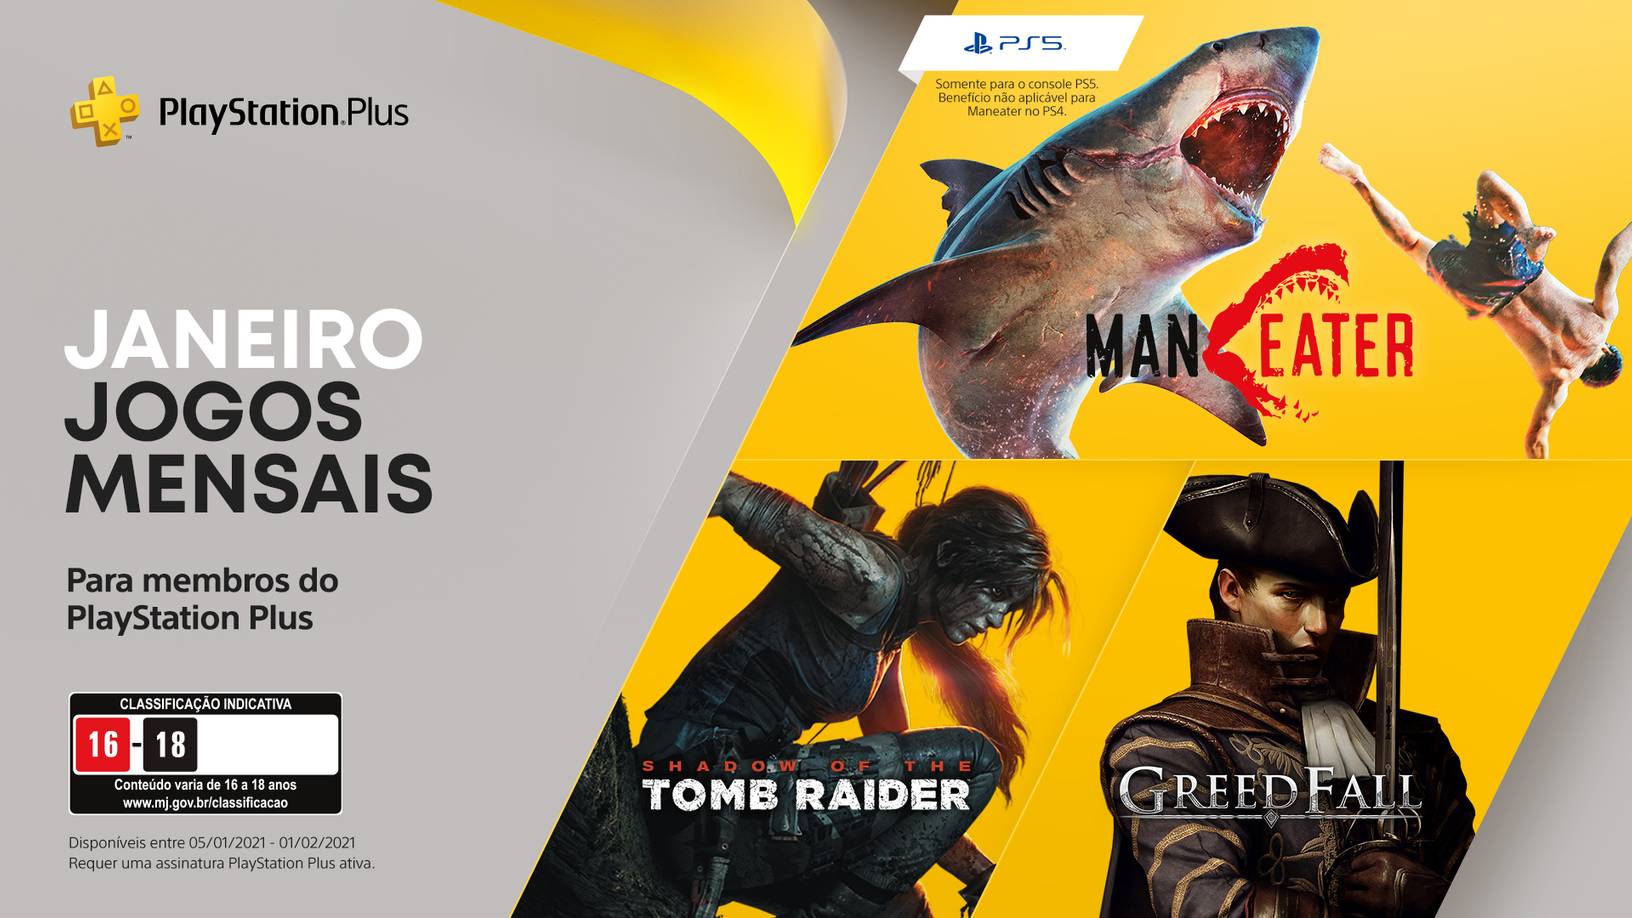 Shadow of the Tomb Raider, Maneater e GreedFall são os destaques da PS Plus em janeiro (Divulgação/Sony)